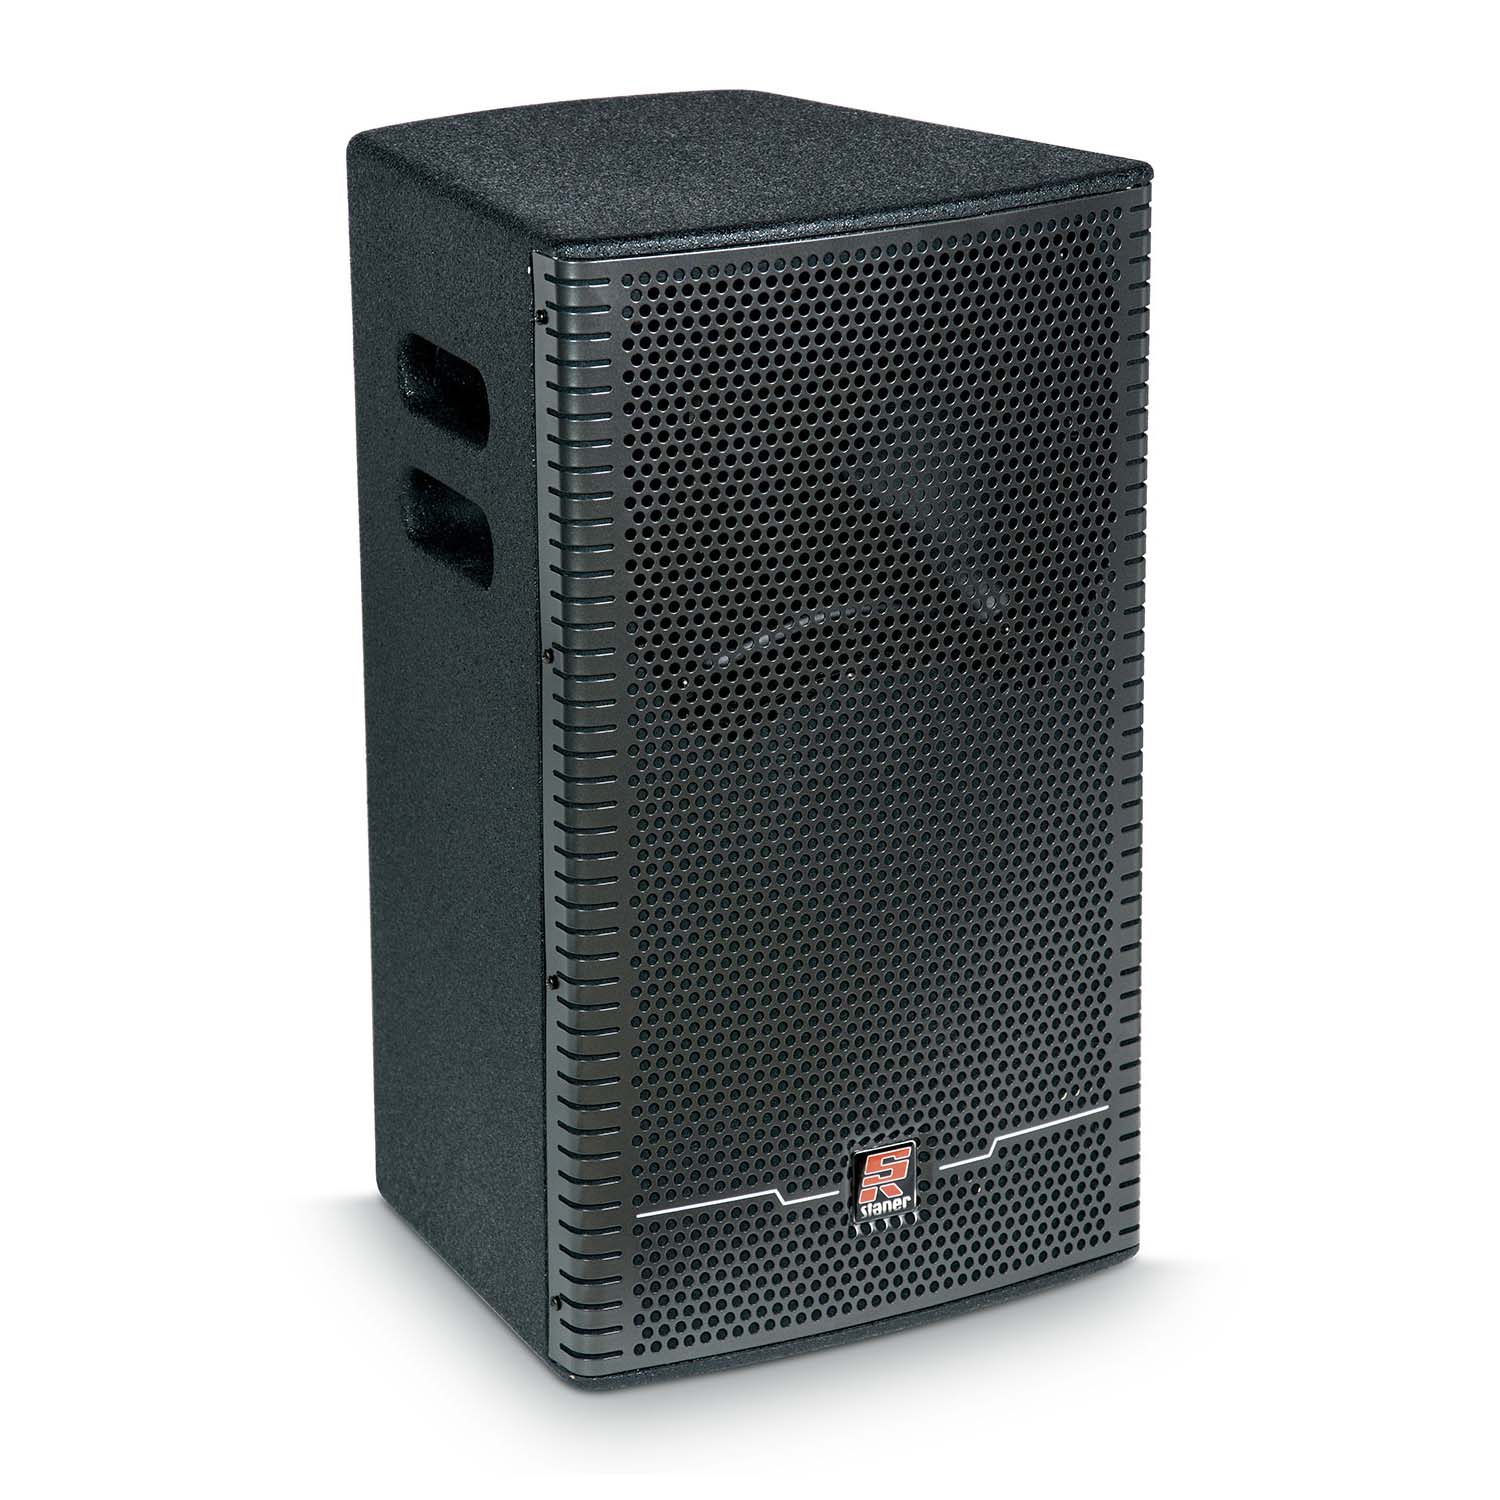 Caixa Acústica Ativa  STANER  UPPER 312A   2 Vias 180 W Bluetooth FM USB MP3 